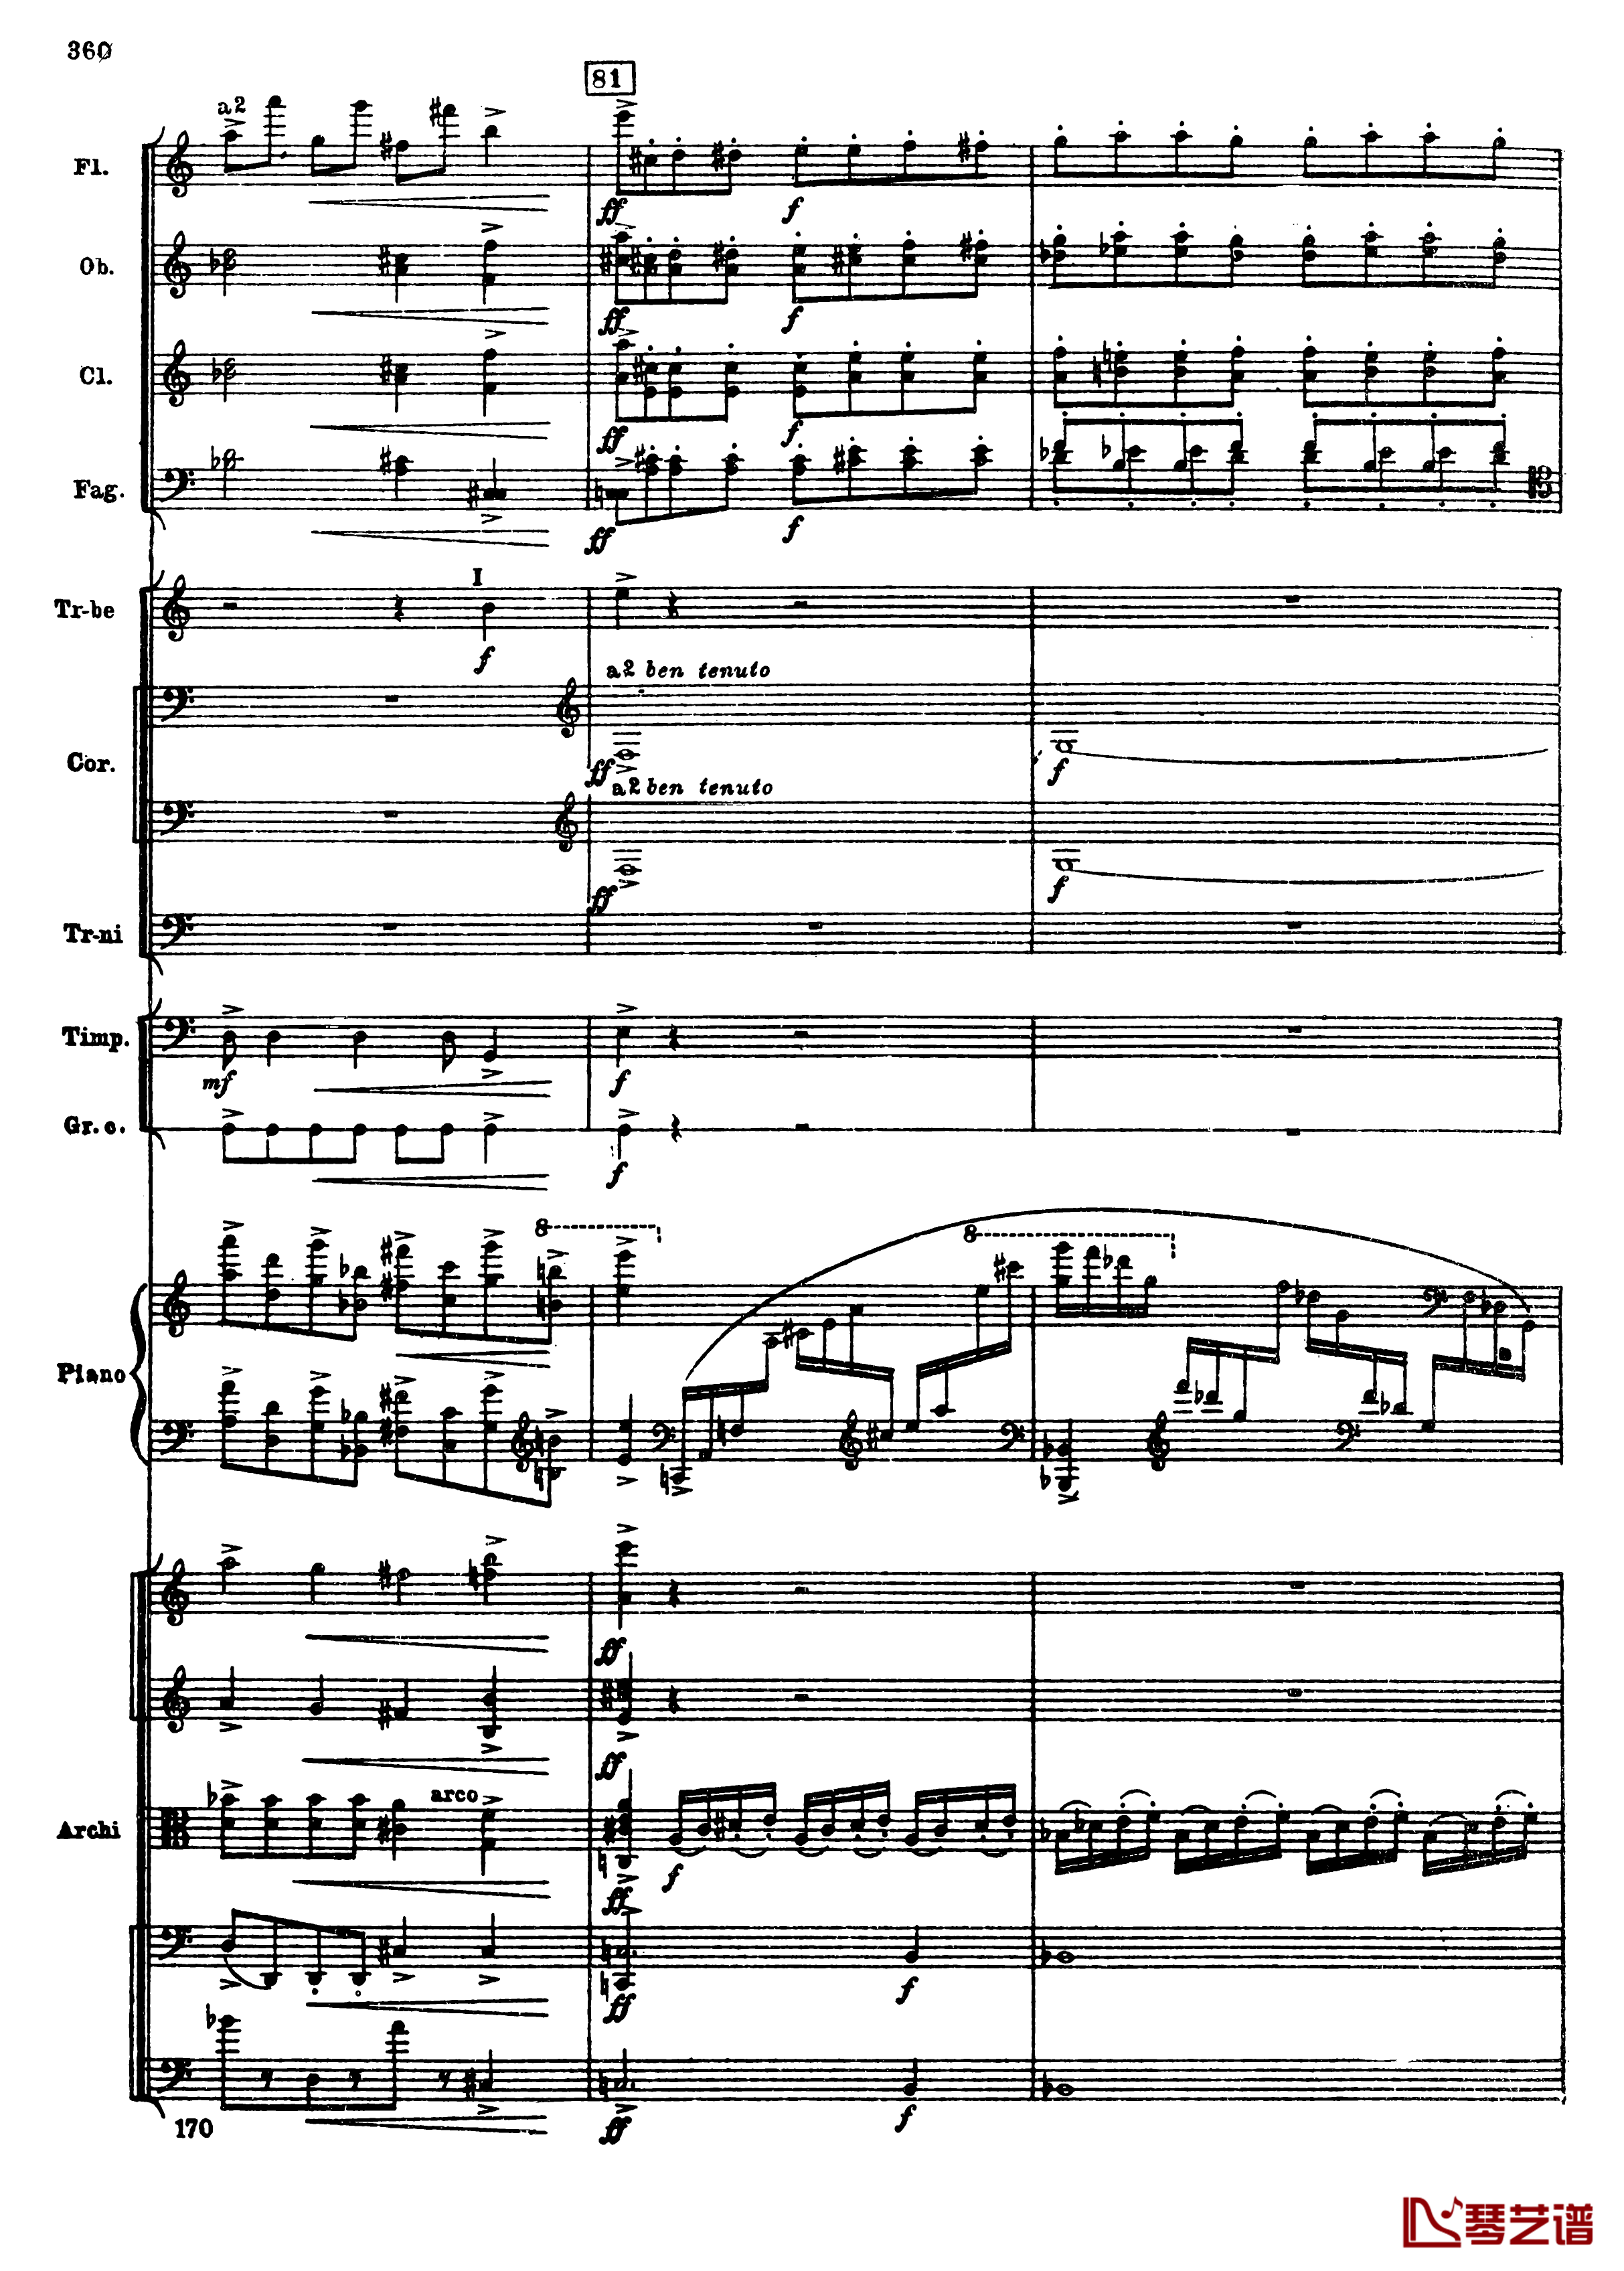 普罗科菲耶夫第三钢琴协奏曲钢琴谱-总谱-普罗科非耶夫92